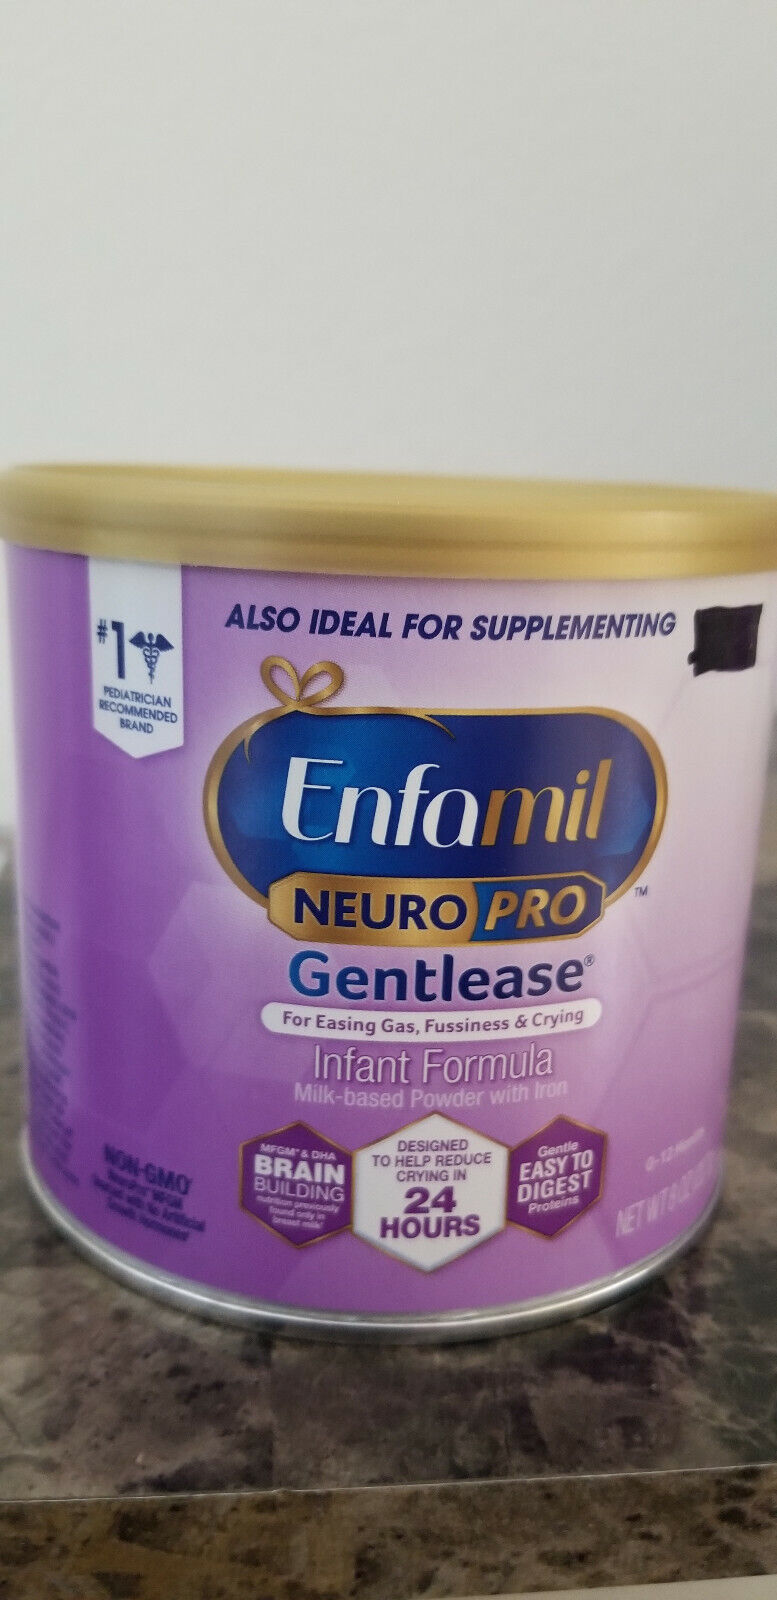 Enfamil Gentlease Milk-Based Infant Formula Powder 8 oz X 9 Ex 06/22 F Shipping Enfamil 869353 - фотография #2